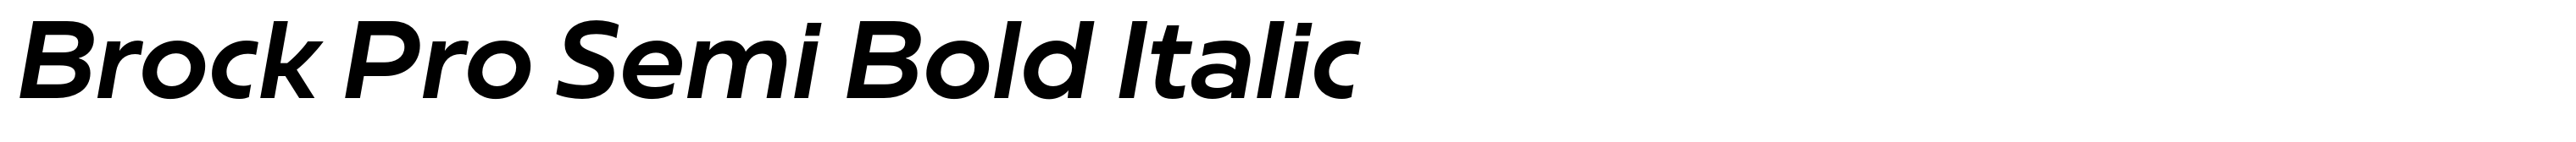 Brock Pro Semi Bold Italic